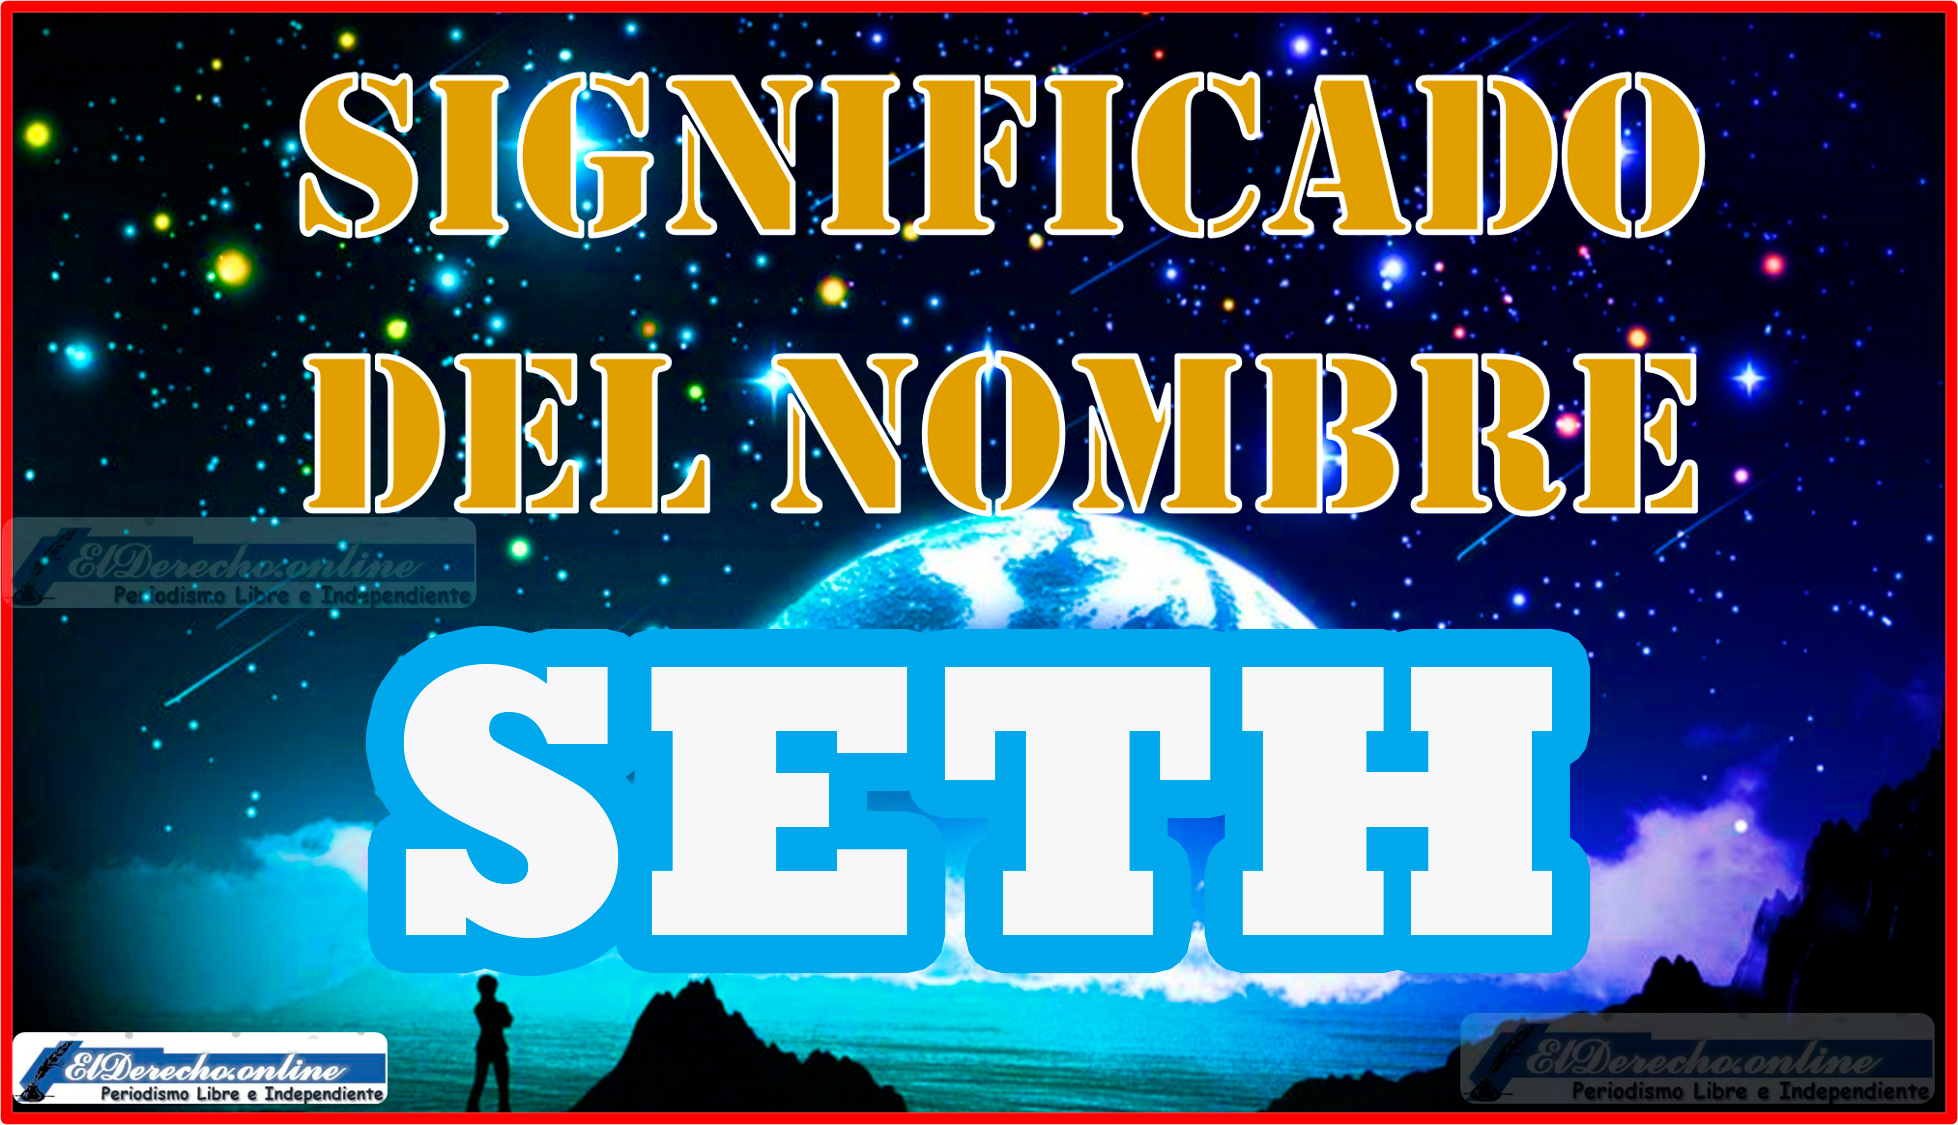 Significado del nombre Seth, su origen y más